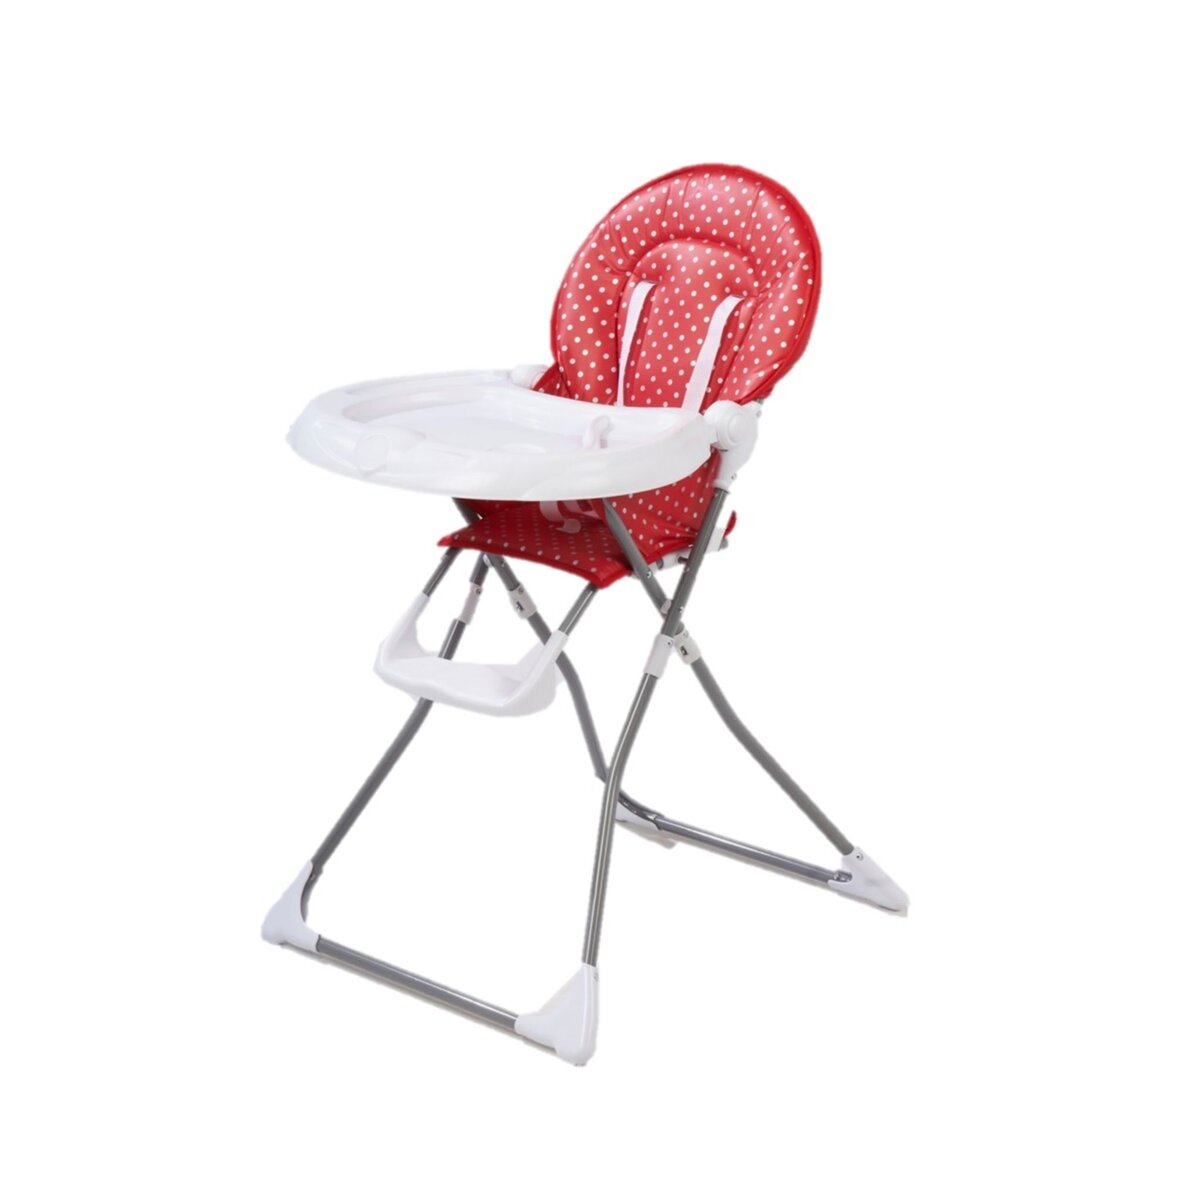 COMPTINE Chaise haute bébé compacte rouge argent Clark